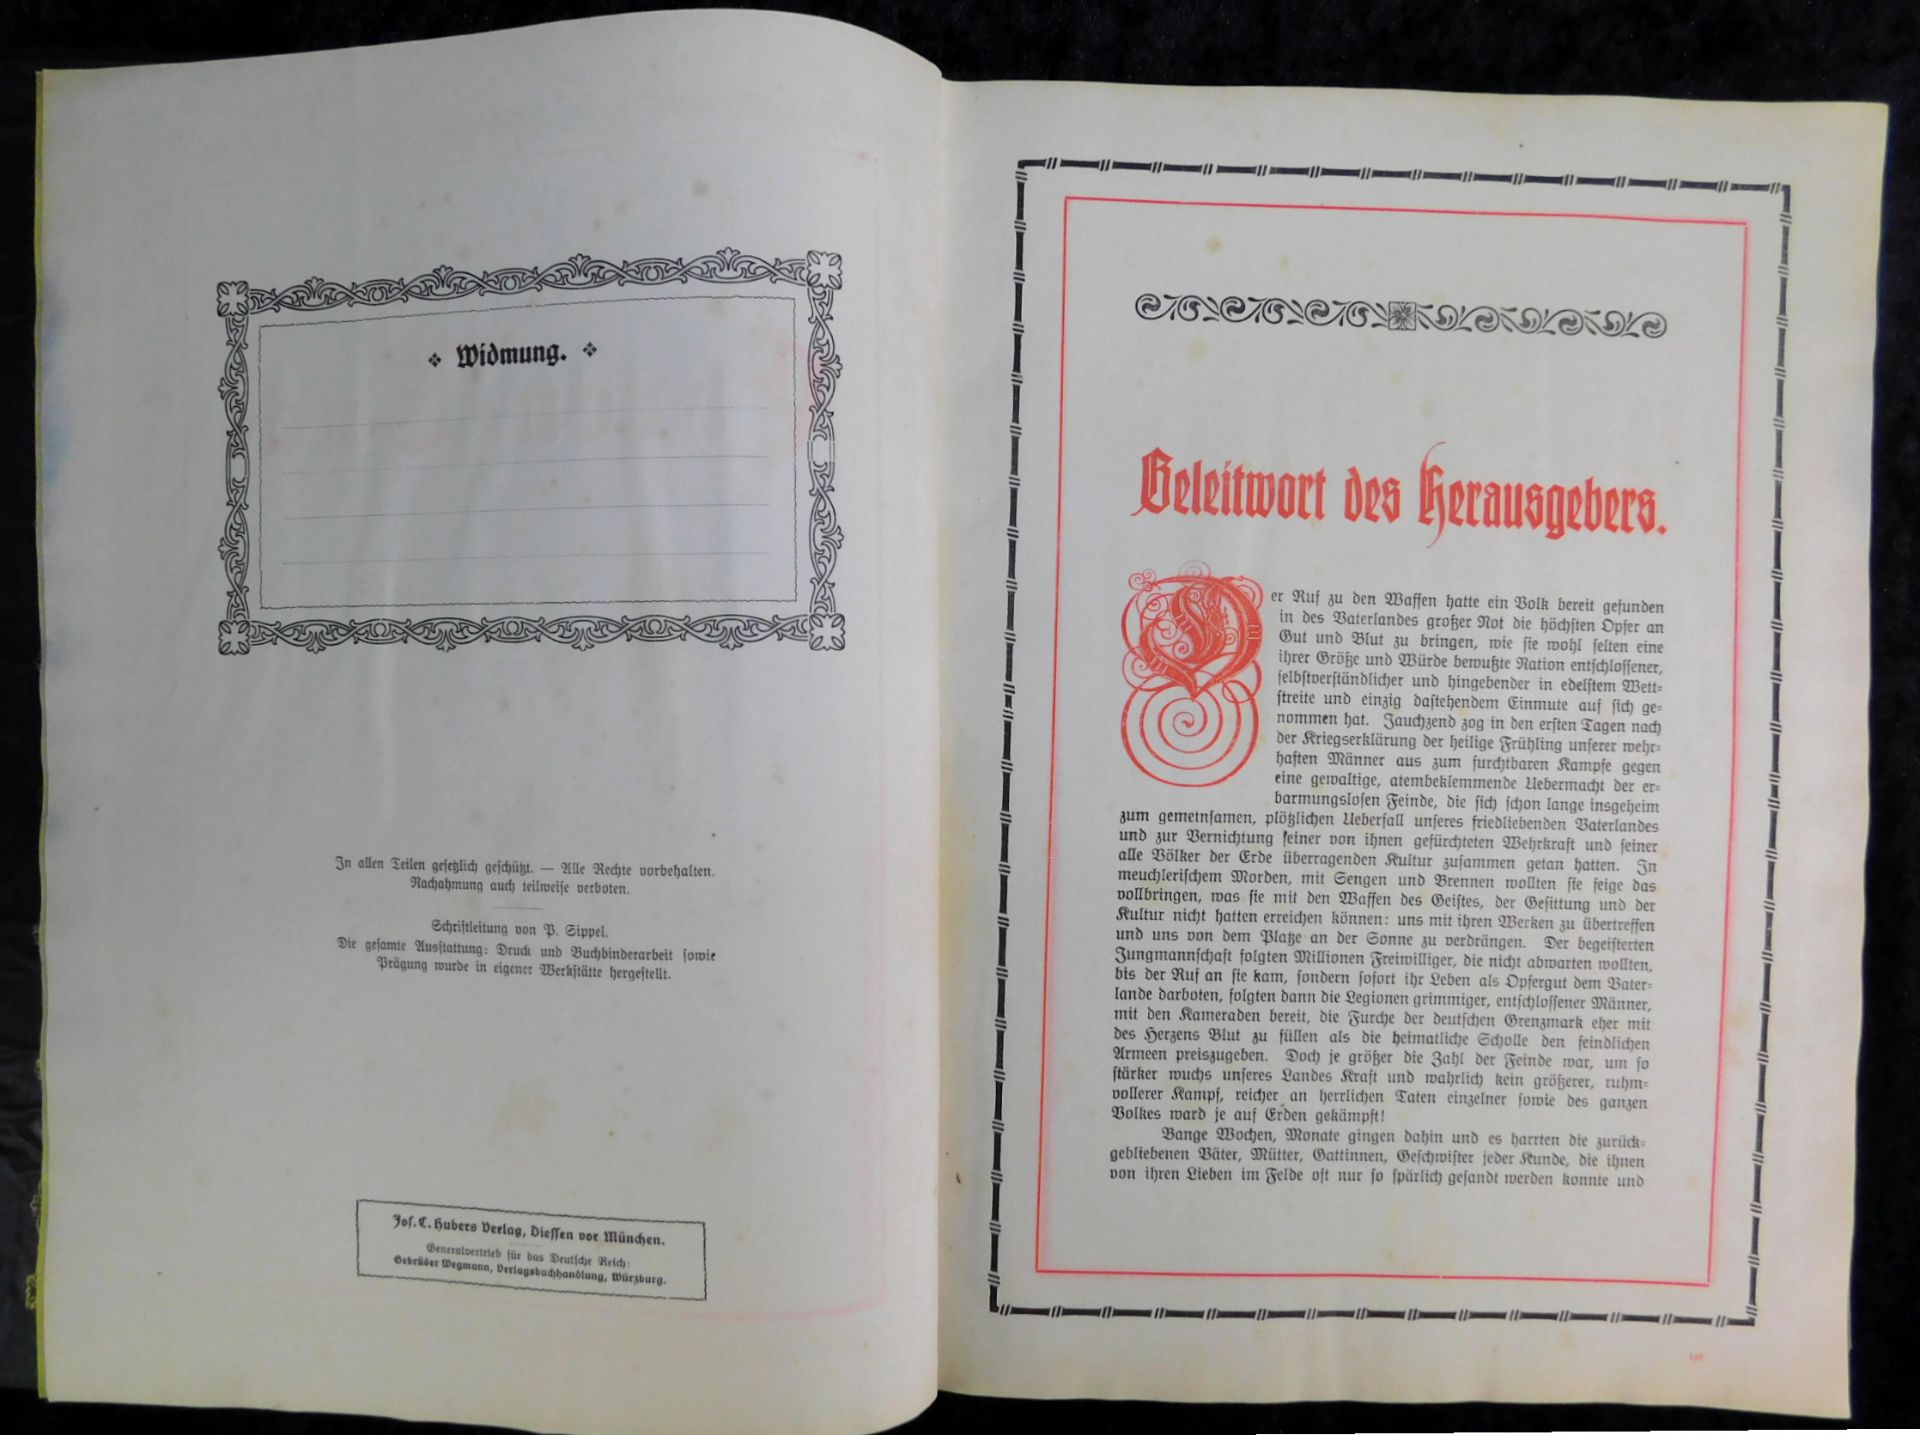 Großes Ehrenbuch 1914, Familienstammbuch, Verlag Joh.E.Hubens, Diessen/München - Image 3 of 7